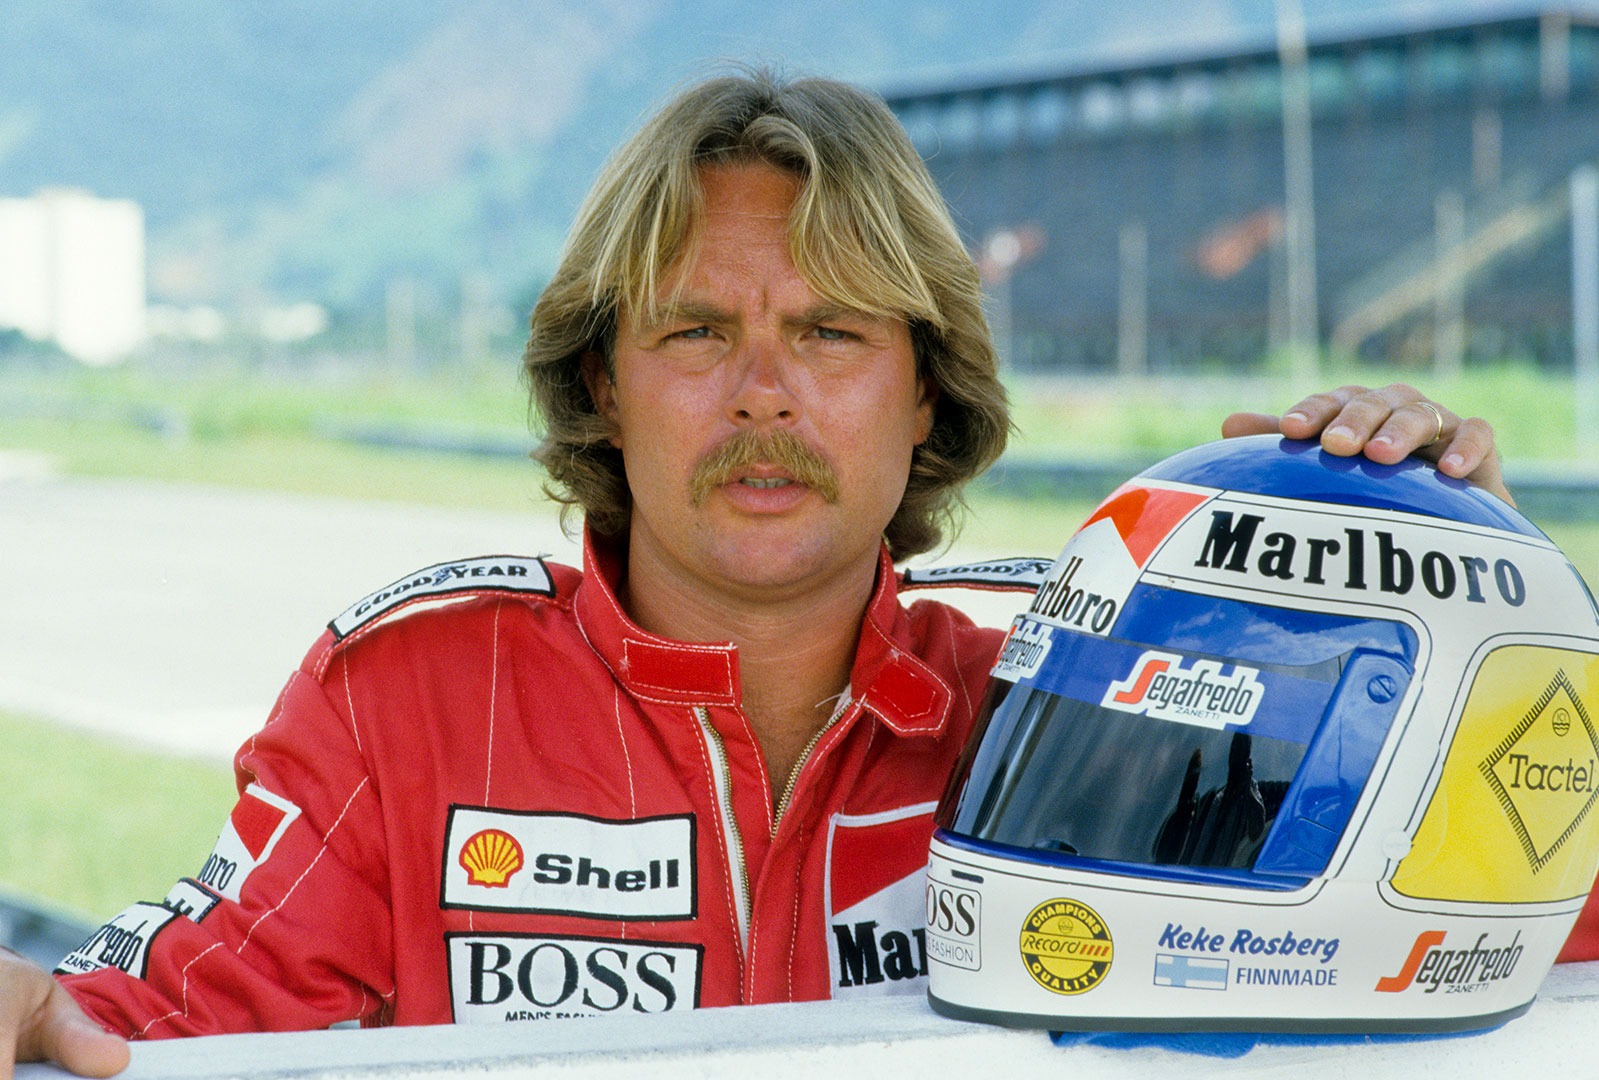 Keke Rosberg in 1986.